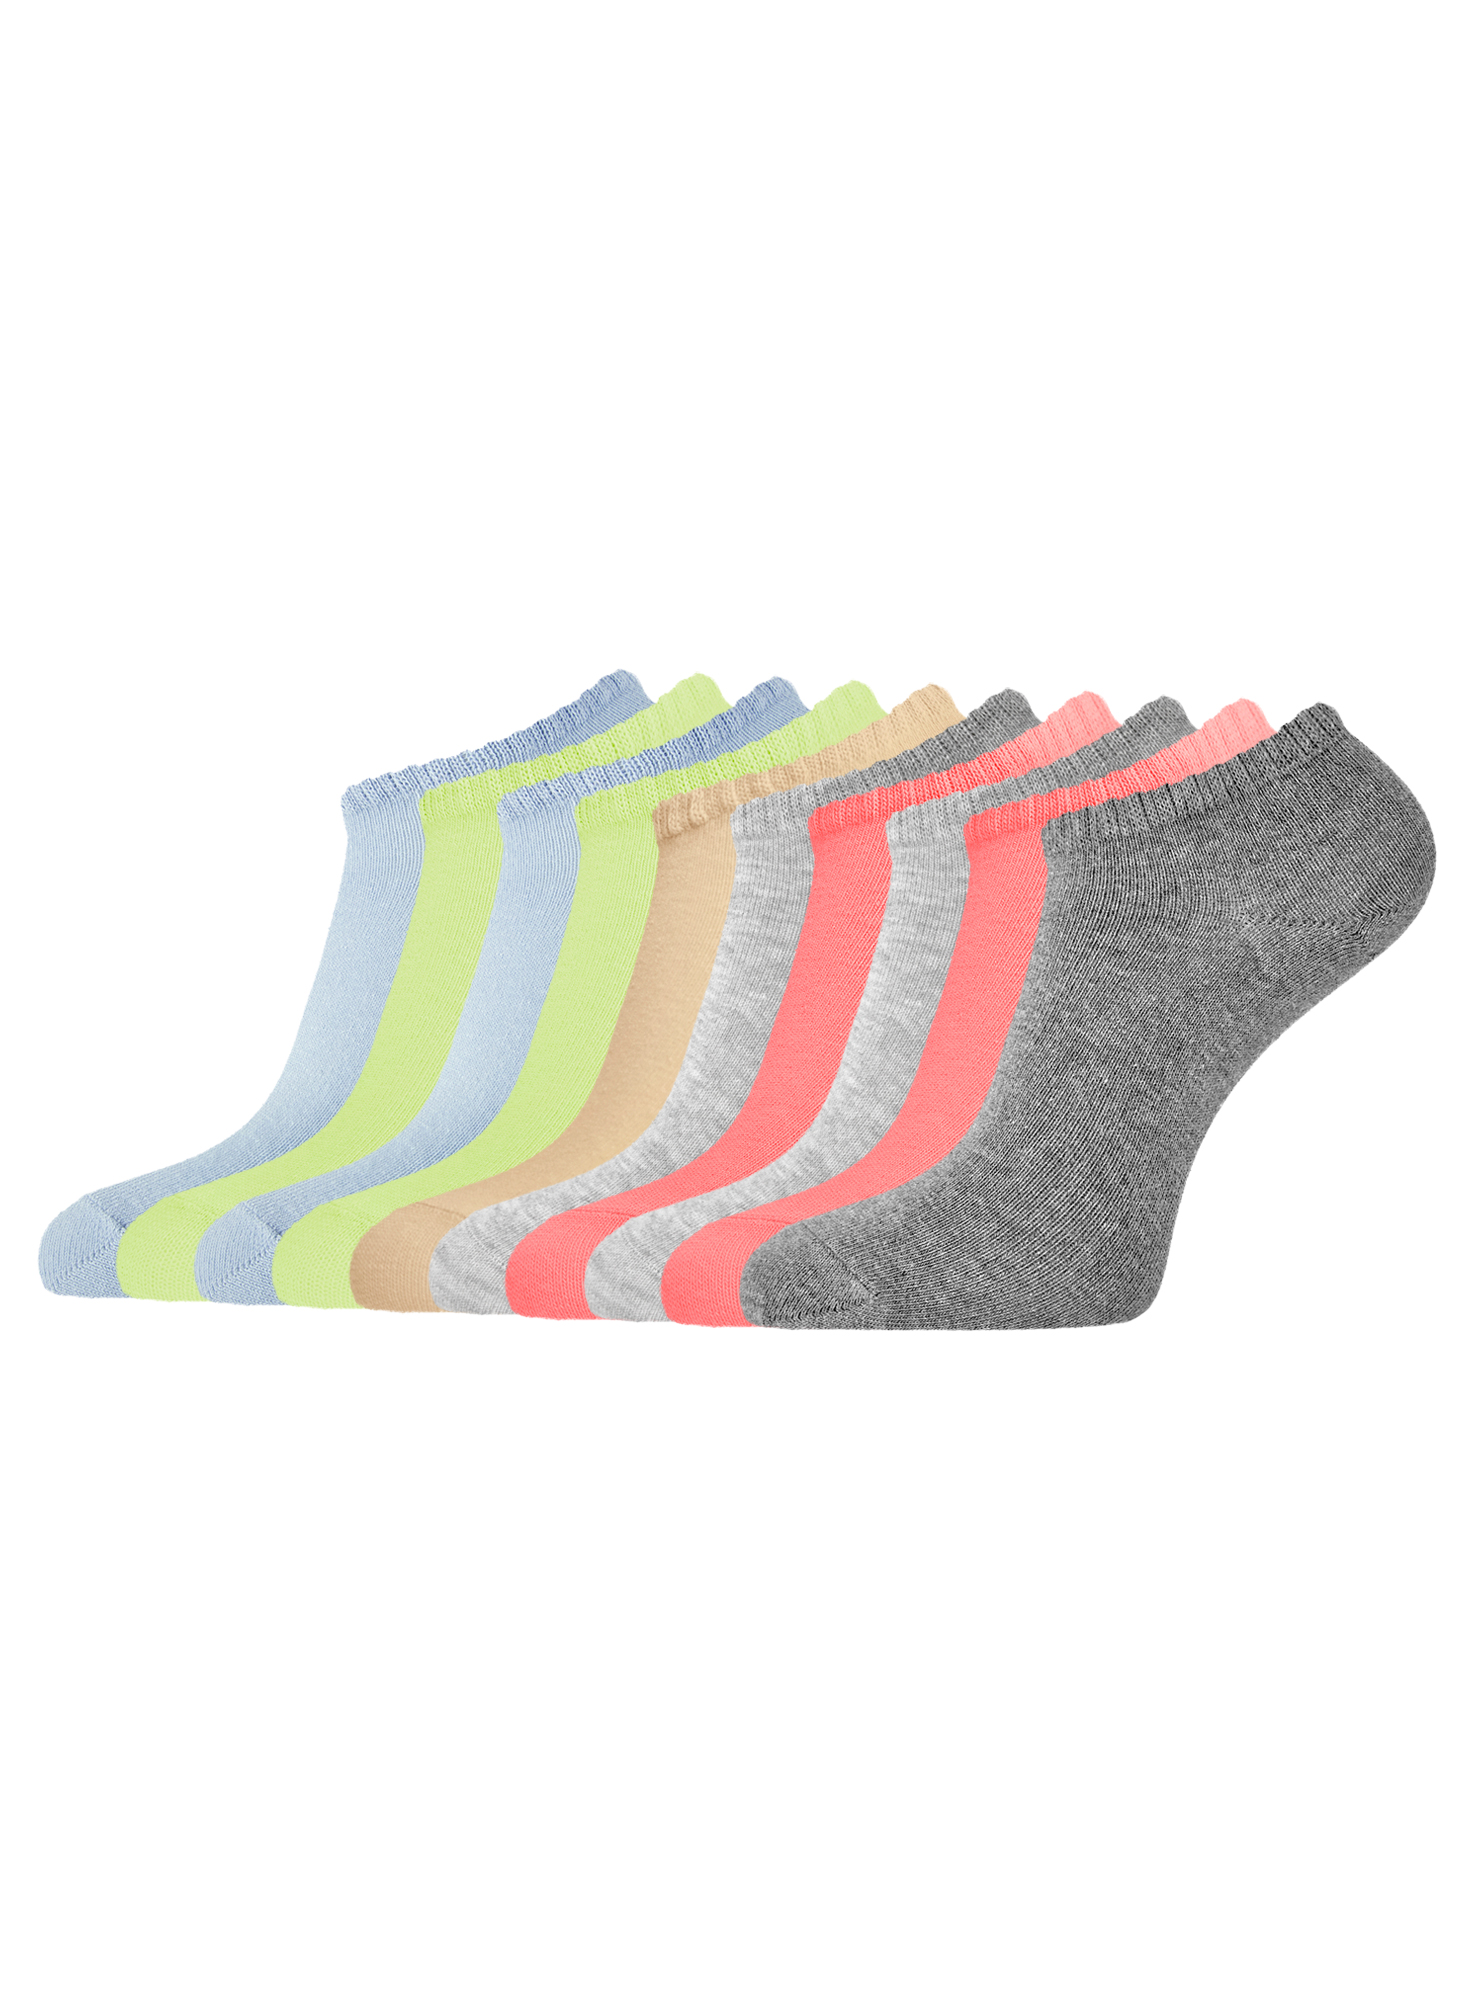 Комплект носков женских oodji 57102433T10 разноцветных 38-40